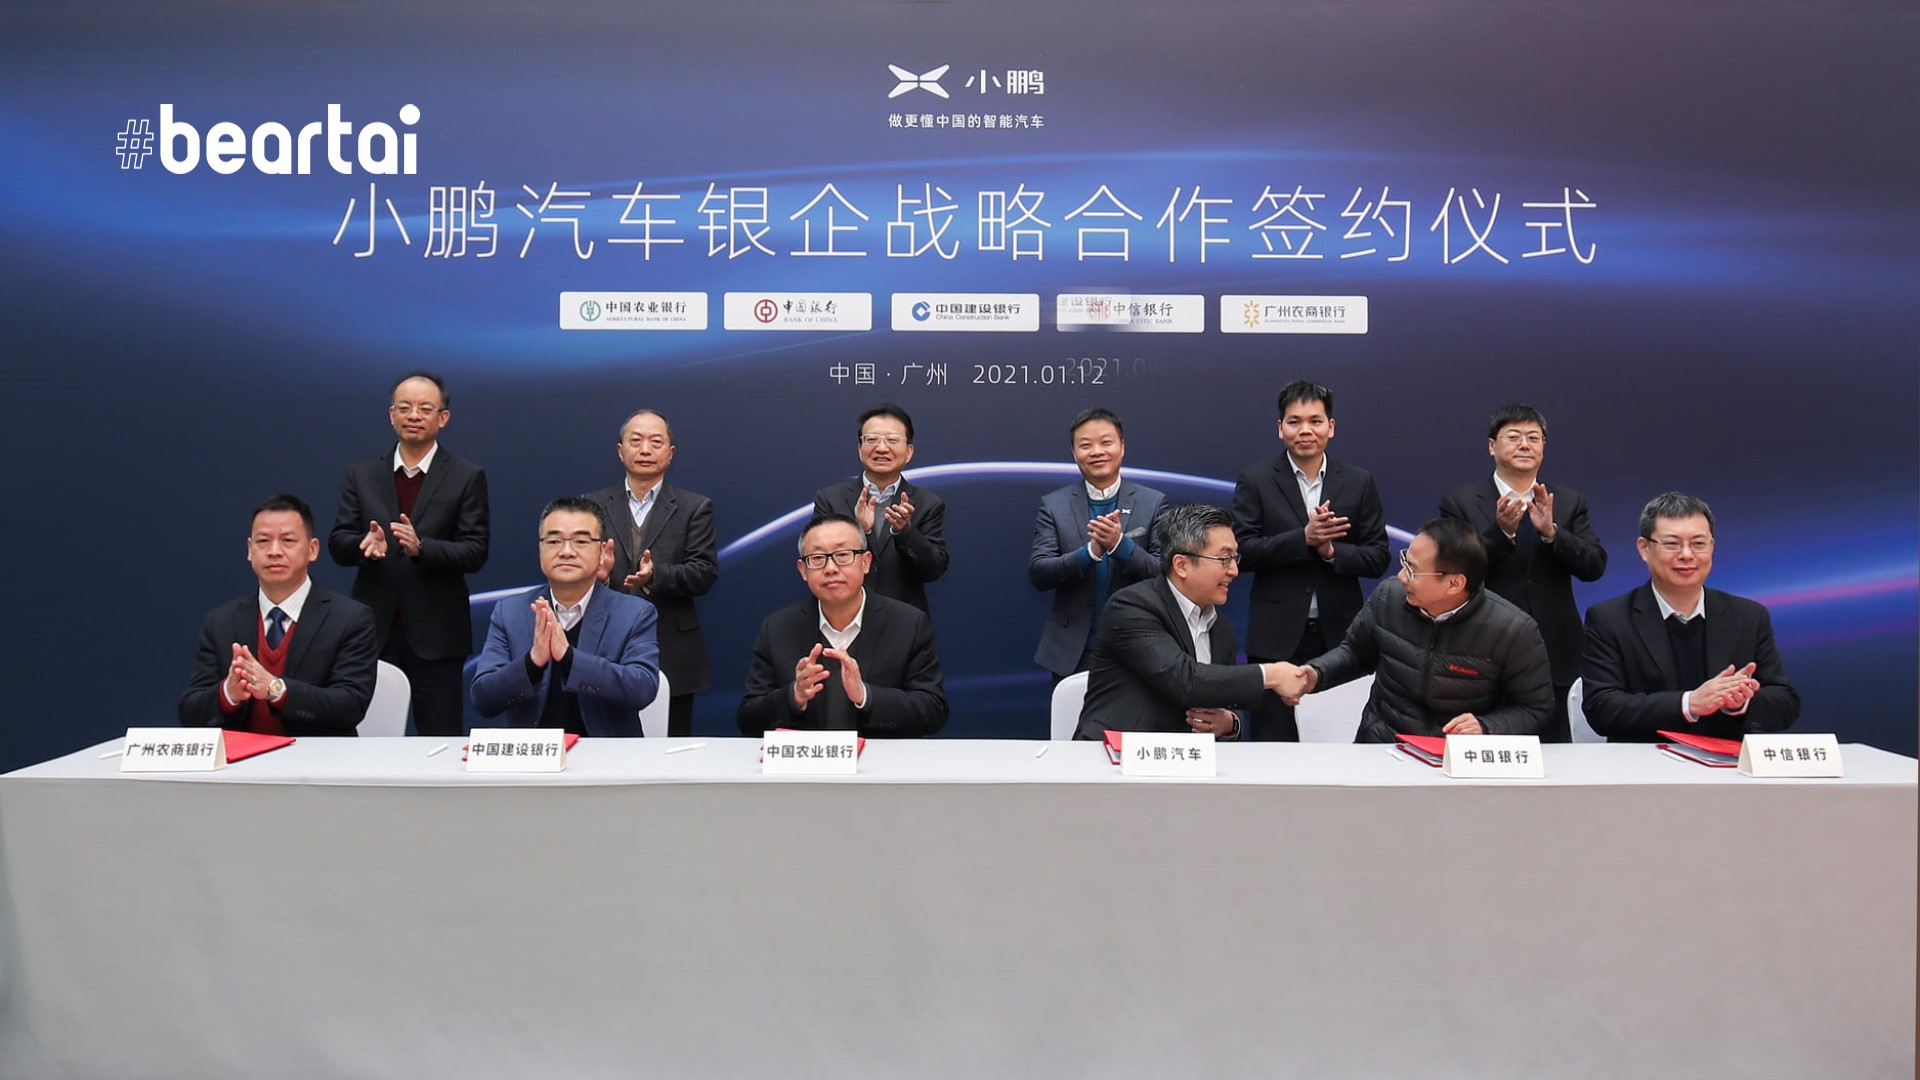 Xpeng บริษัท EV ของจีนได้รับเครดิตสินเชื่อ 60,000 ล้านบาทเพื่อขยายการผลิตและธุรกิจ